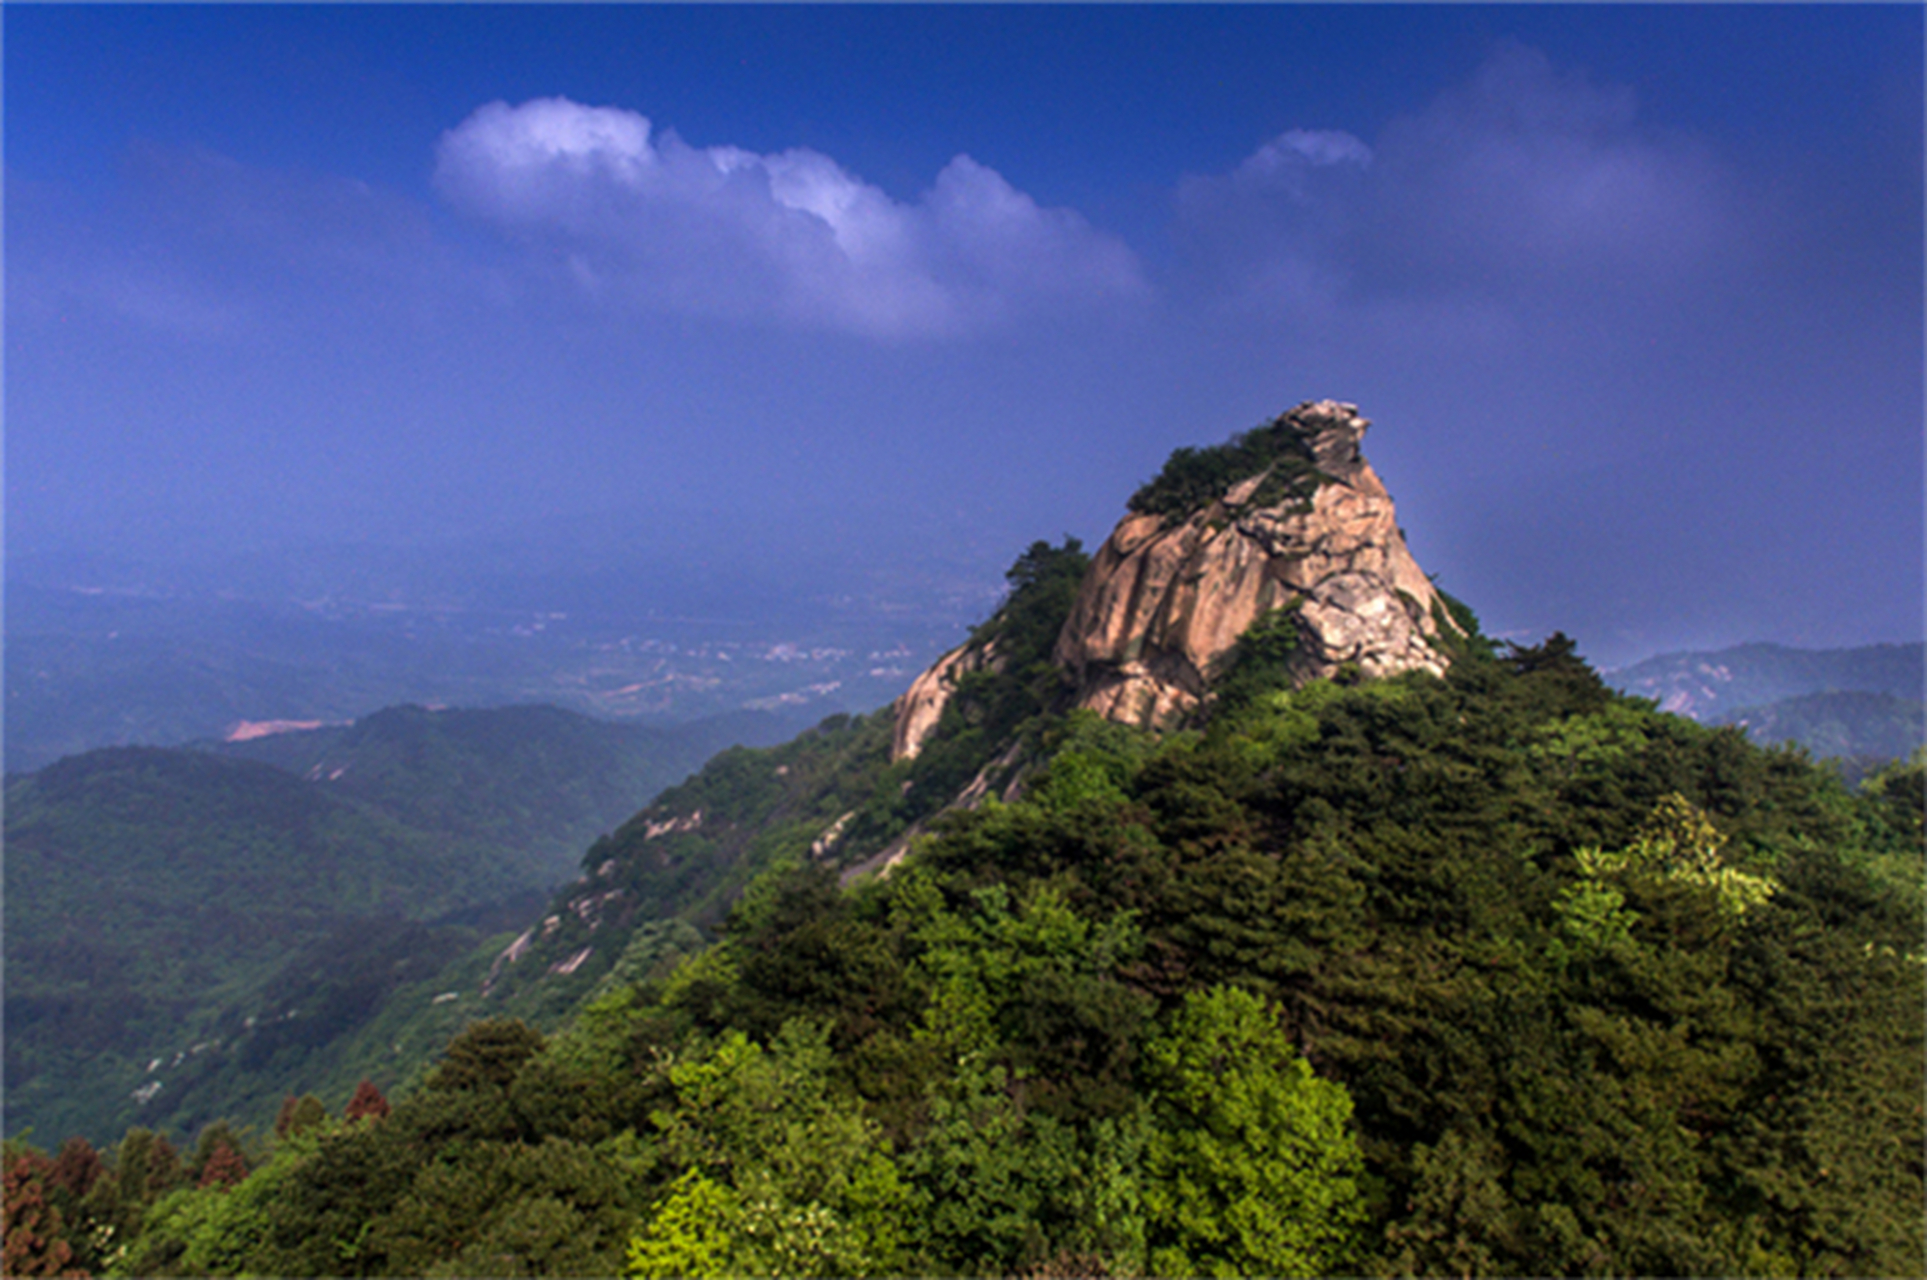 鸡公山,是河南省信阳市的一座风景名胜,也是中国四大避暑胜地之一